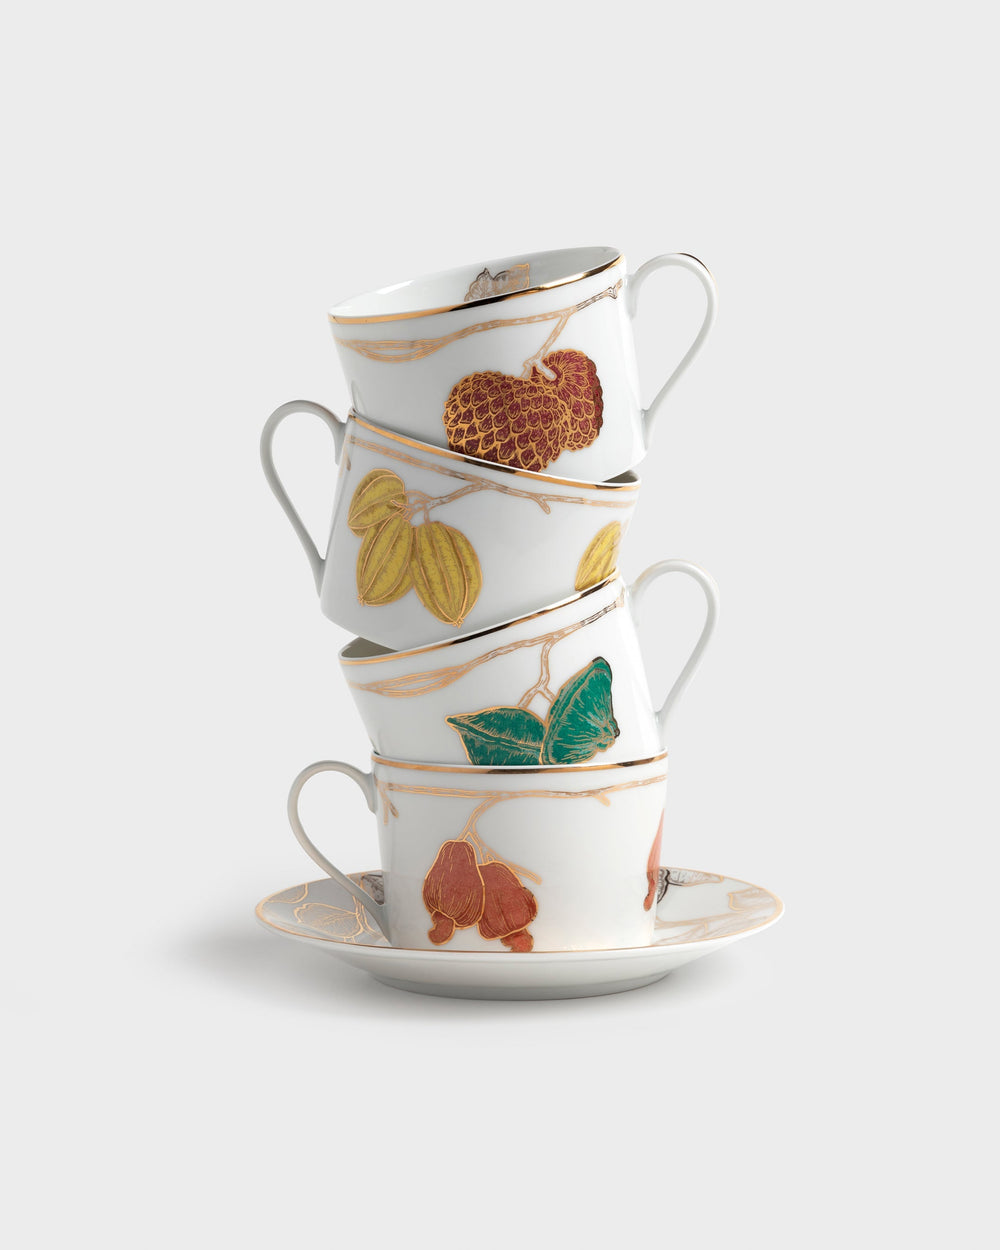 Tania Bulhoes Tea Cup and Saucer Frutas do Brasil 4 Piece Set